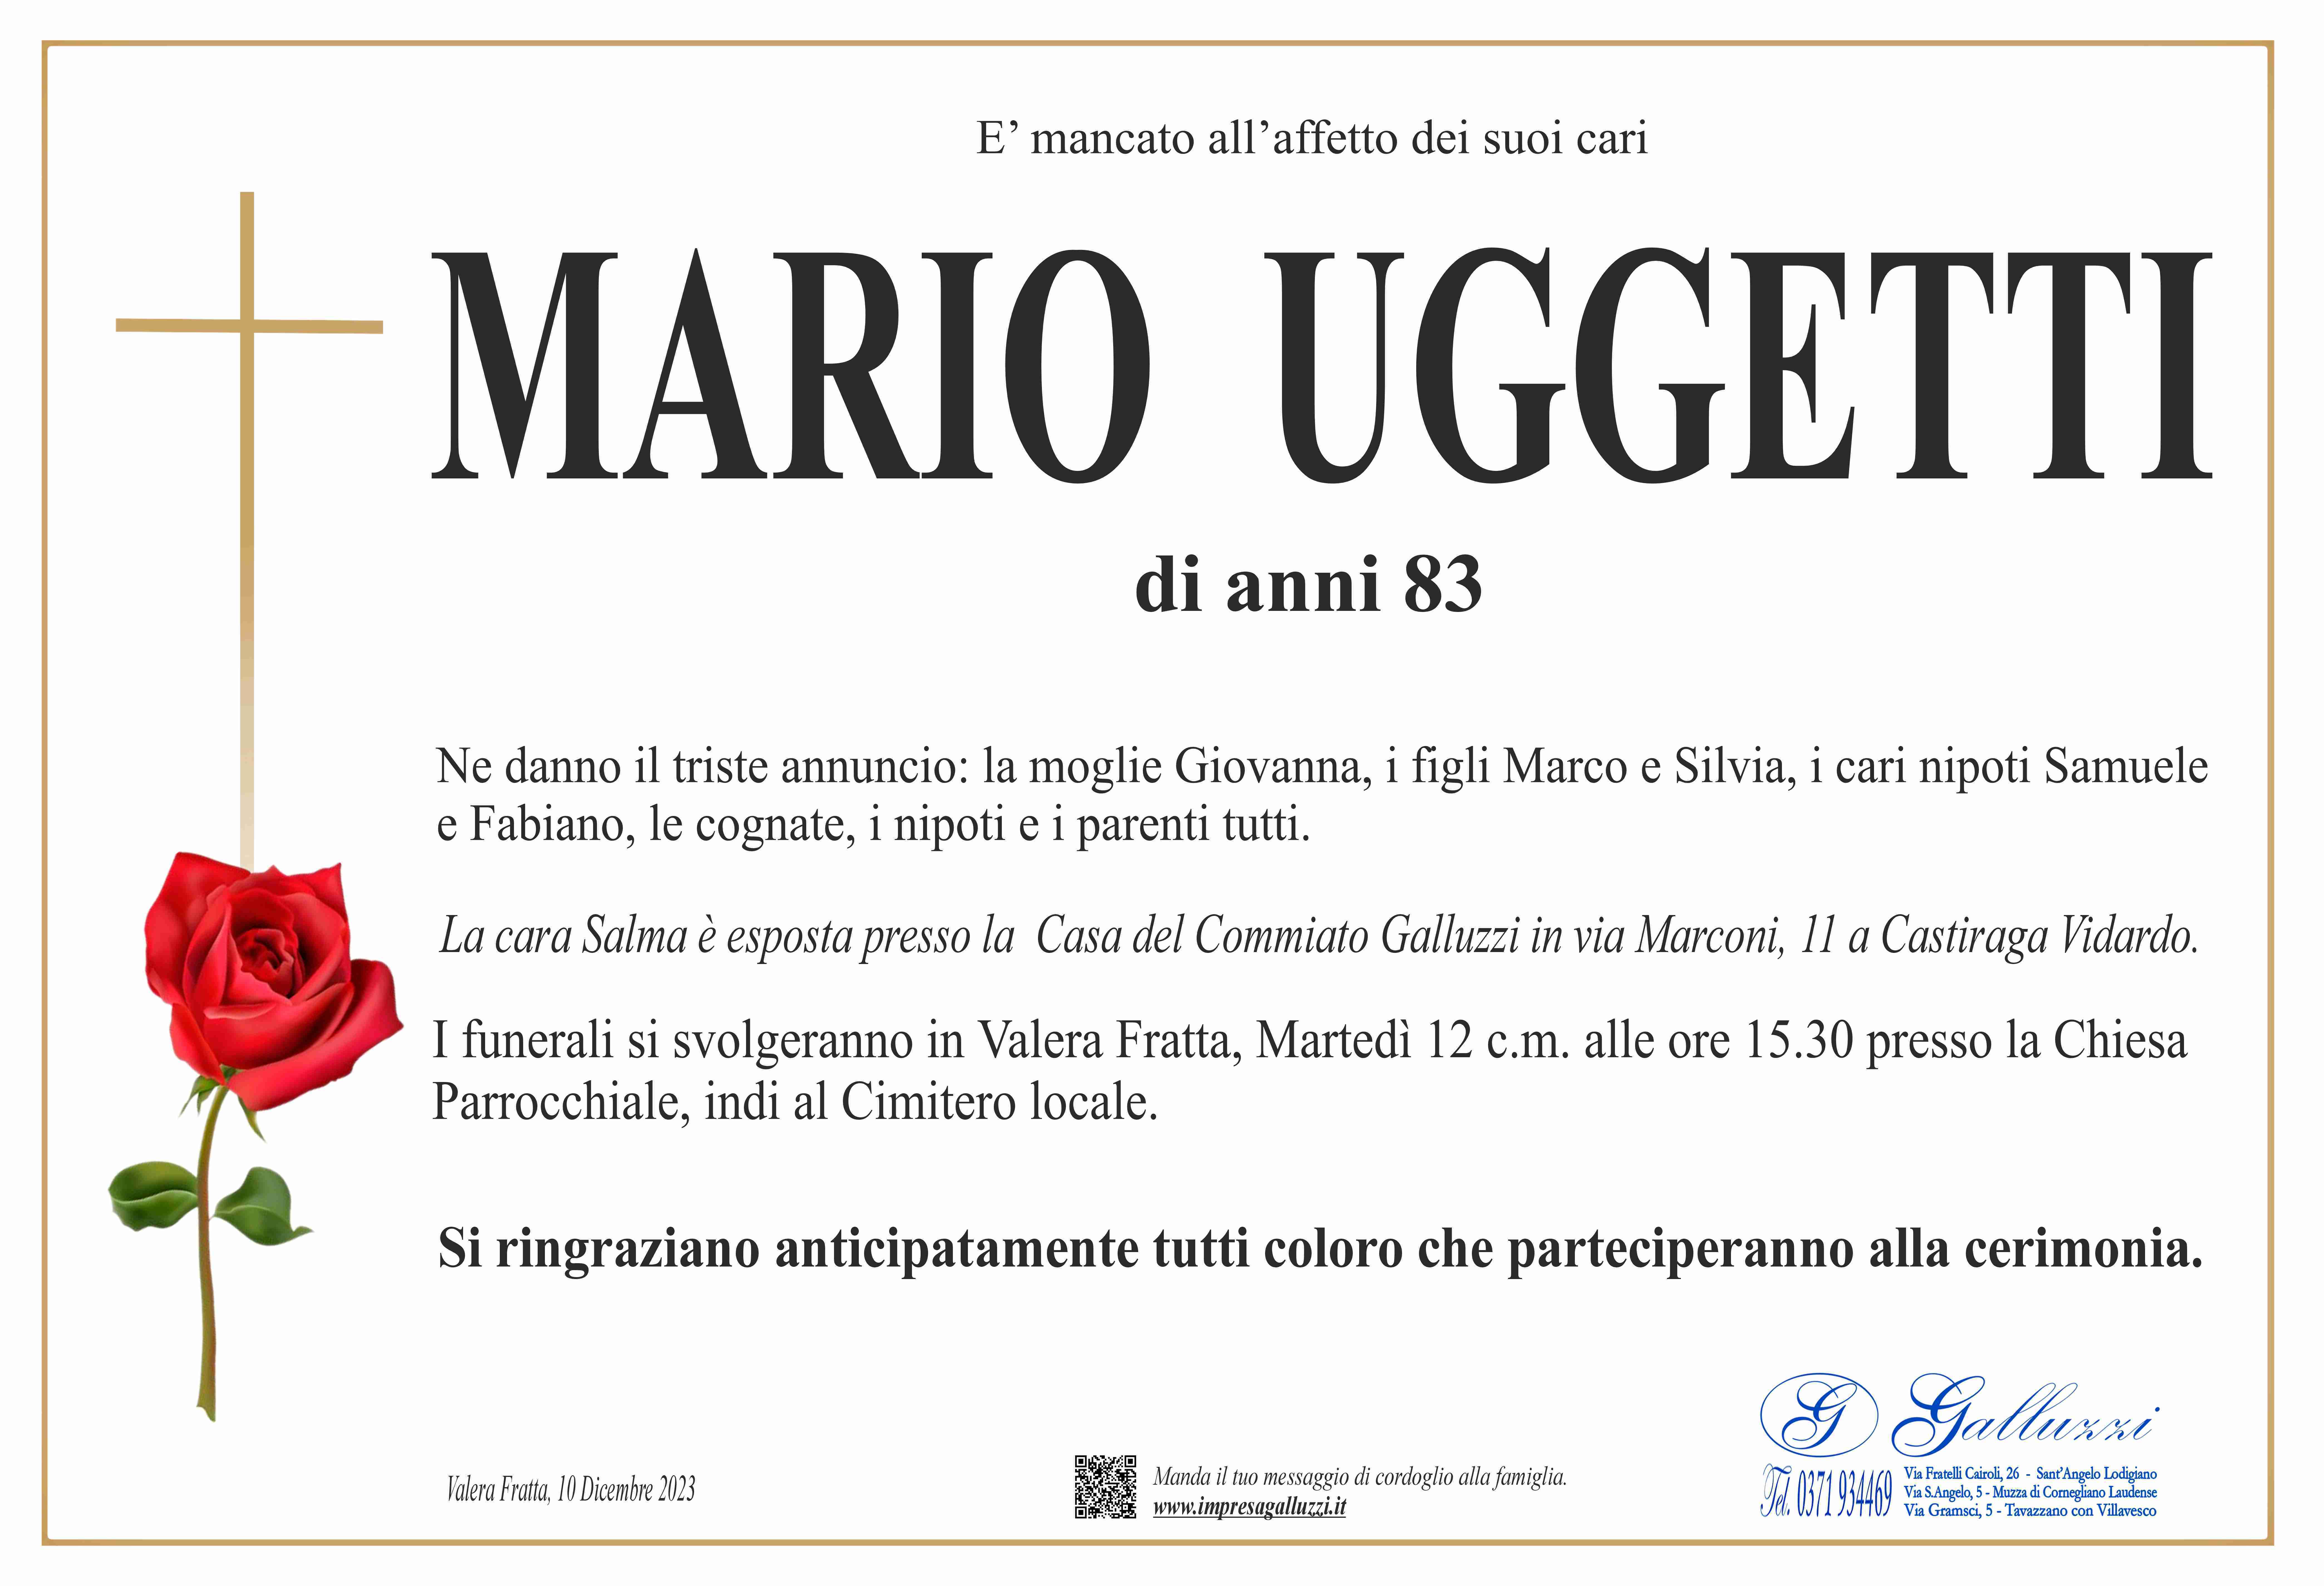 Mario Uggetti